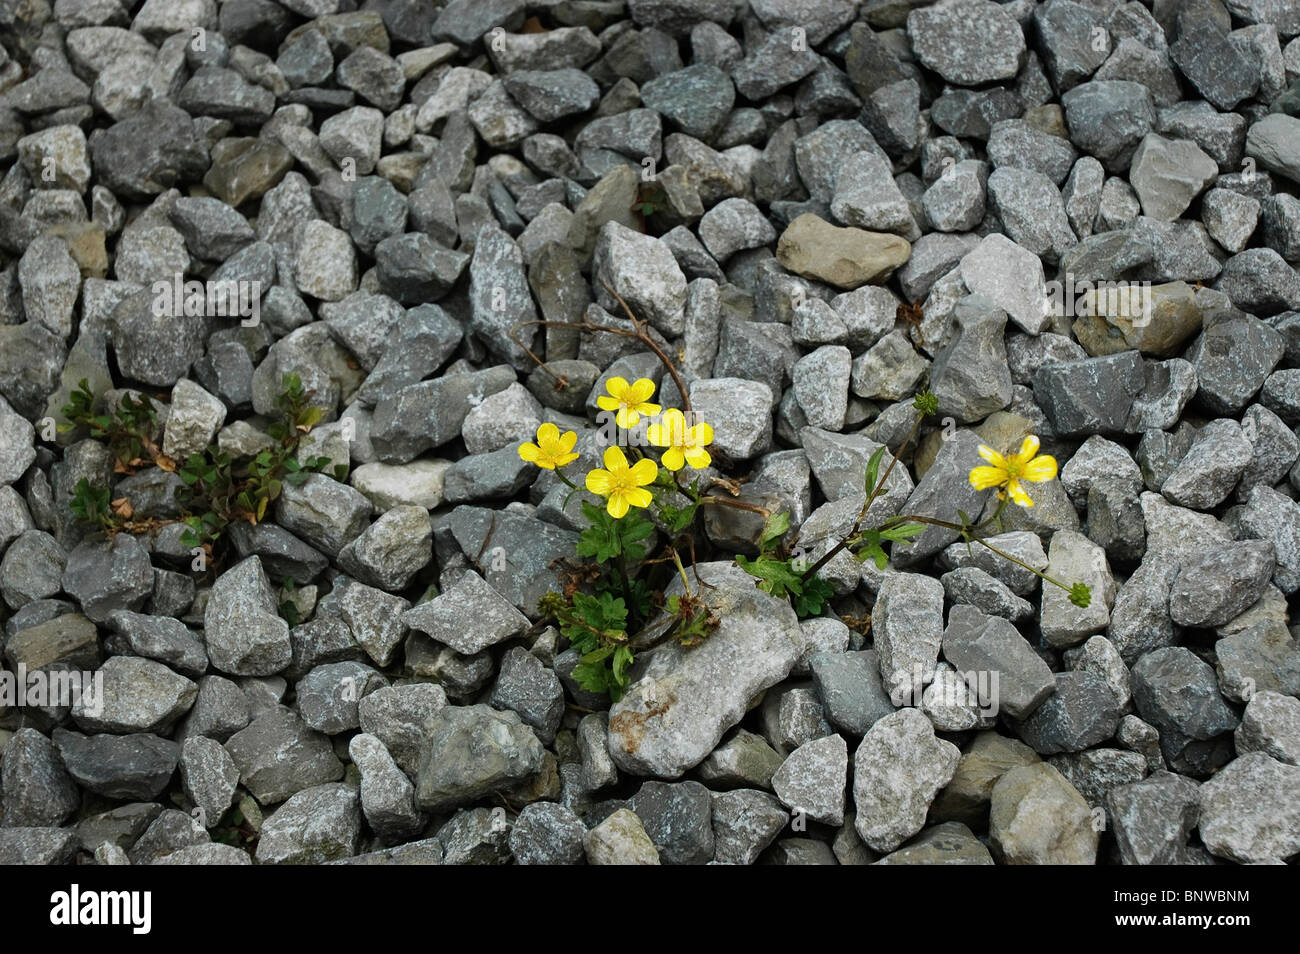 Flowers growing on rocks in parking lot, Kentucky Stock Photo